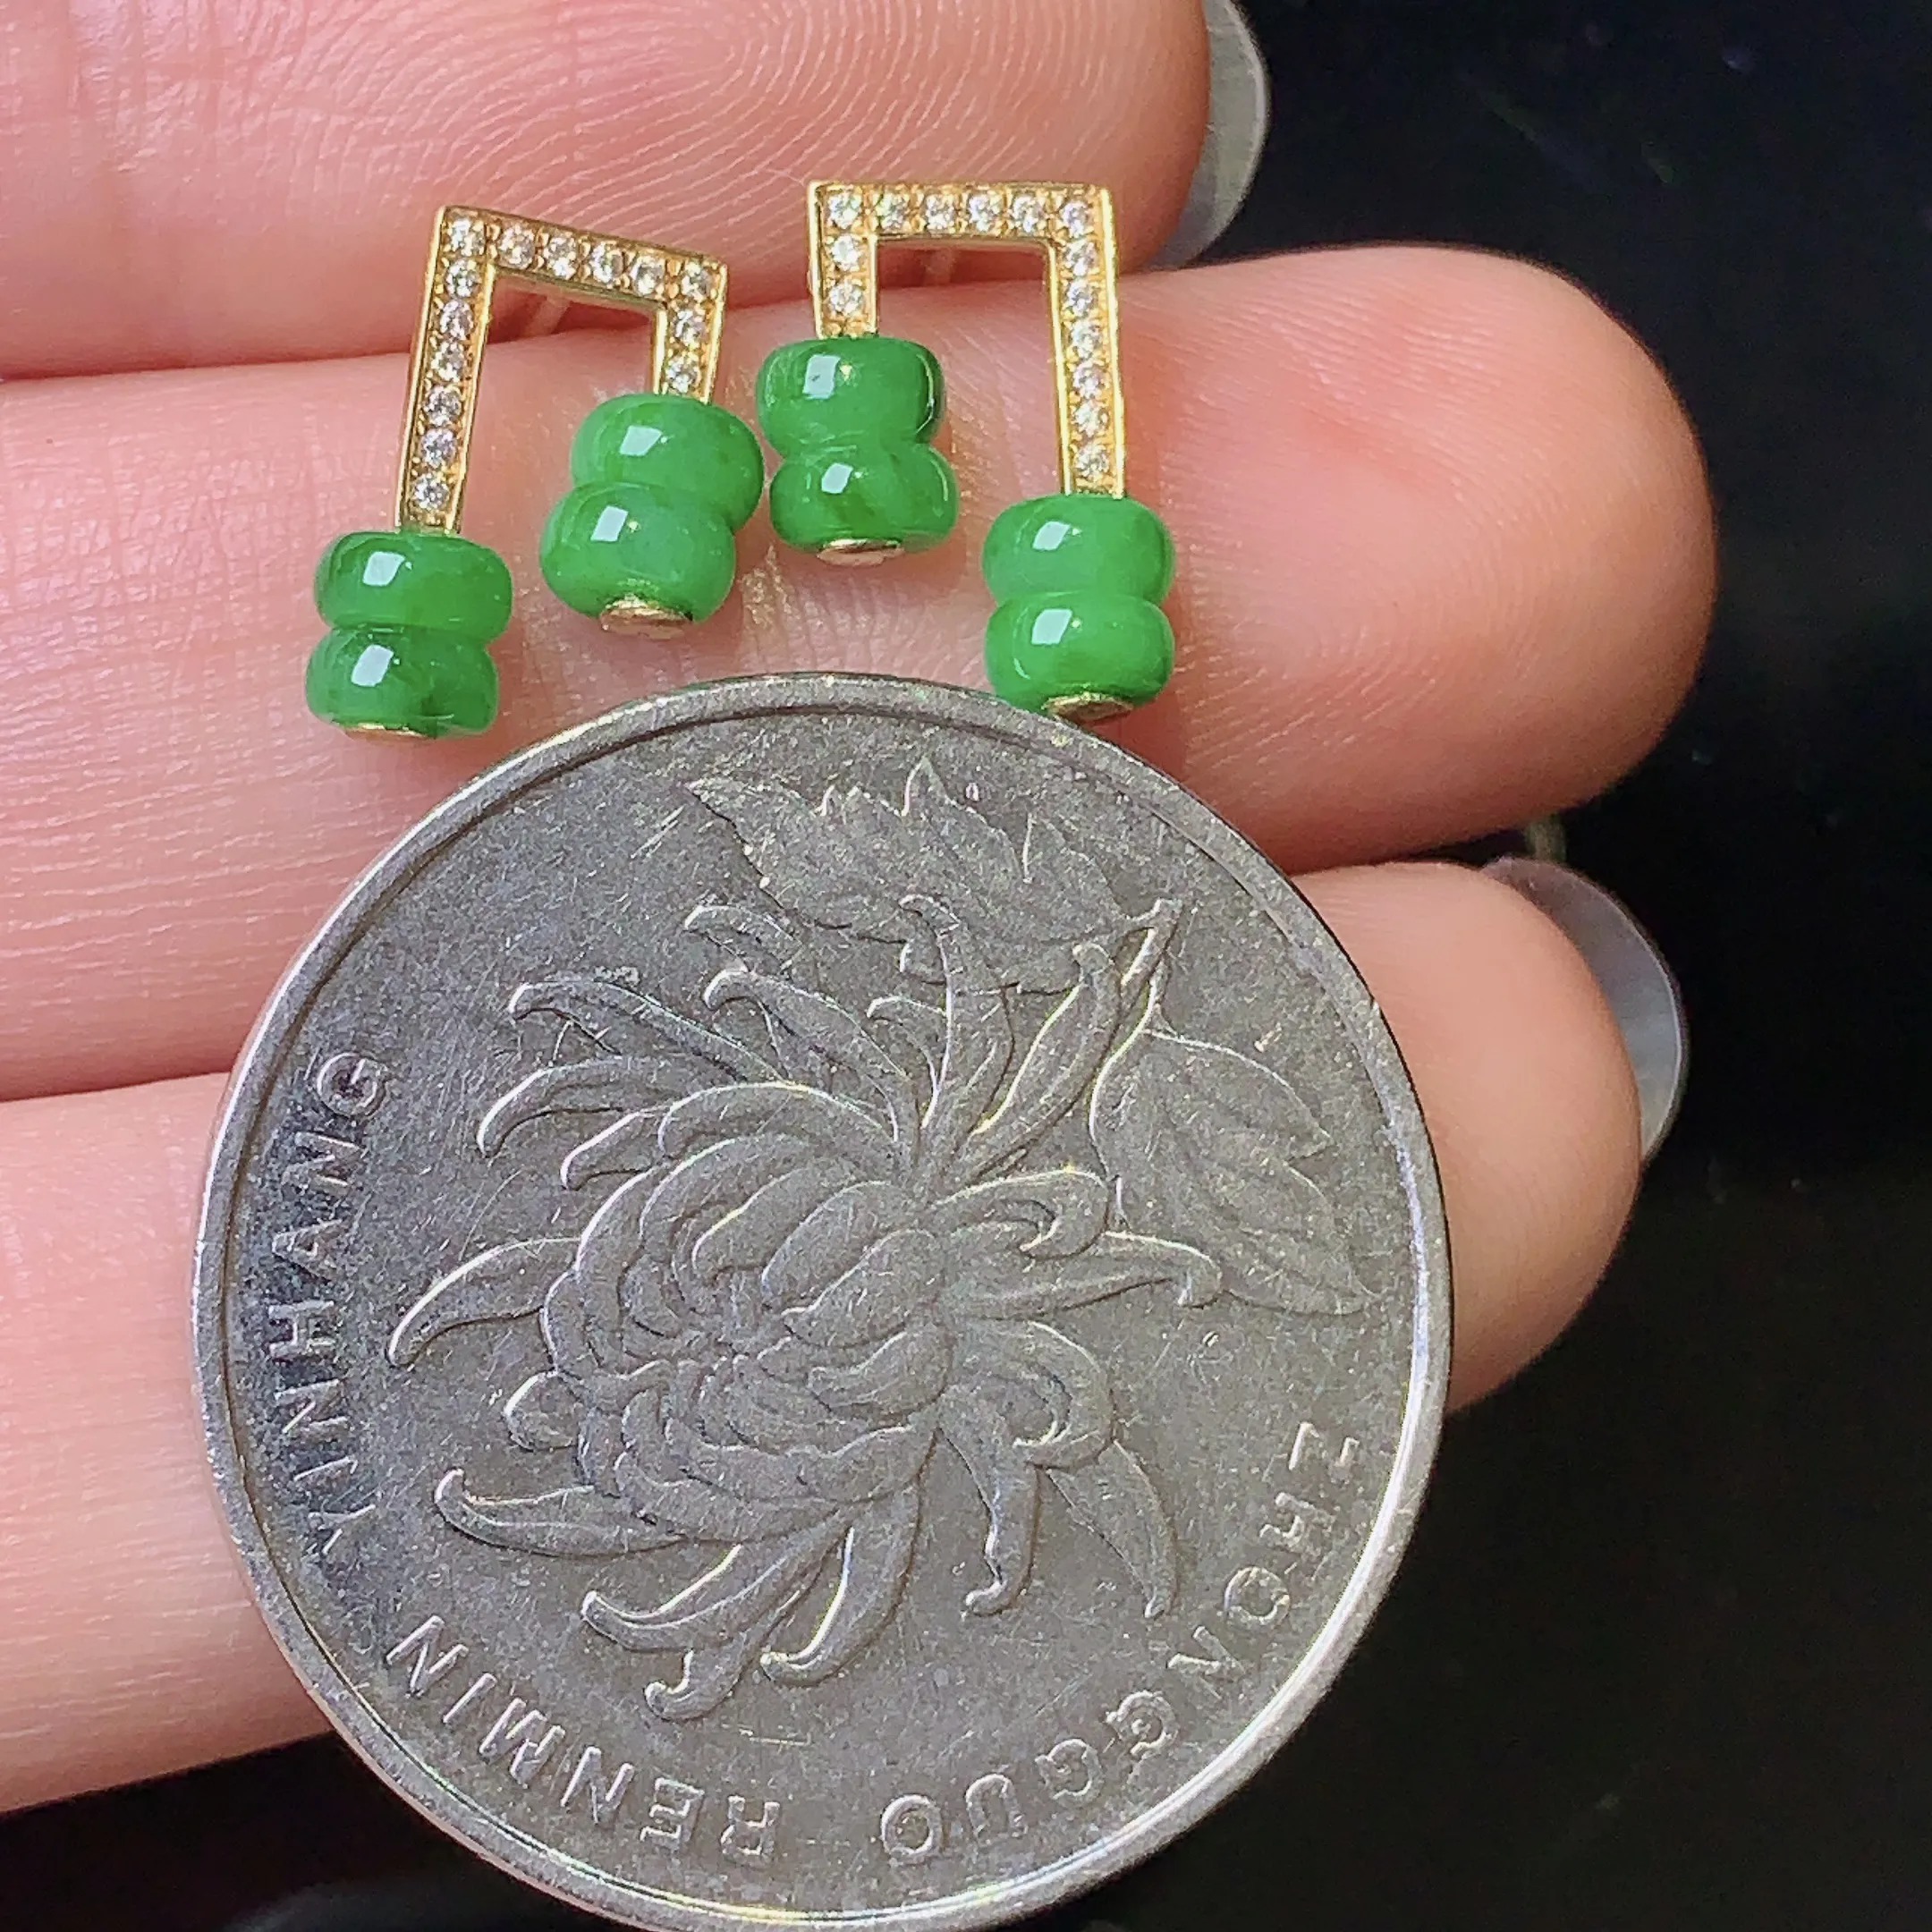 18k金钻镶嵌满绿算盘珠耳钉 玉质细腻 色泽艳丽 整体尺寸10.8*8*3.8